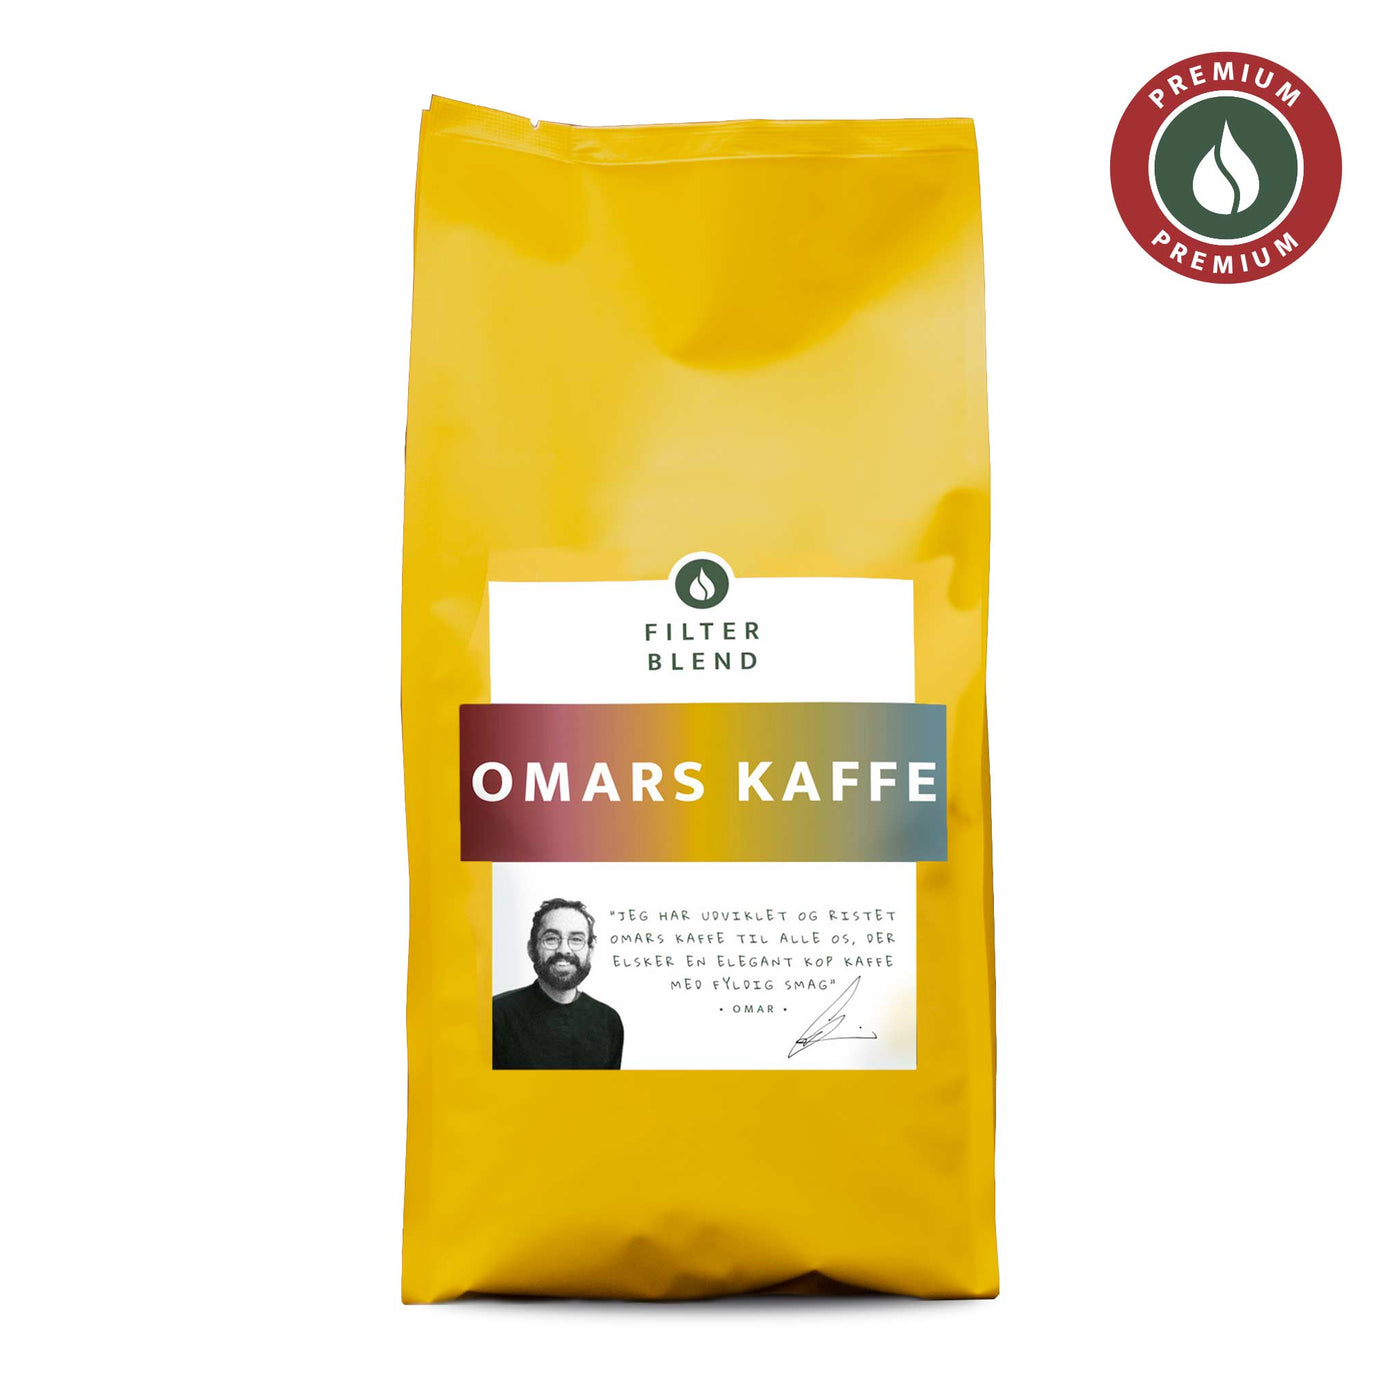 Omars Kaffe - Filter